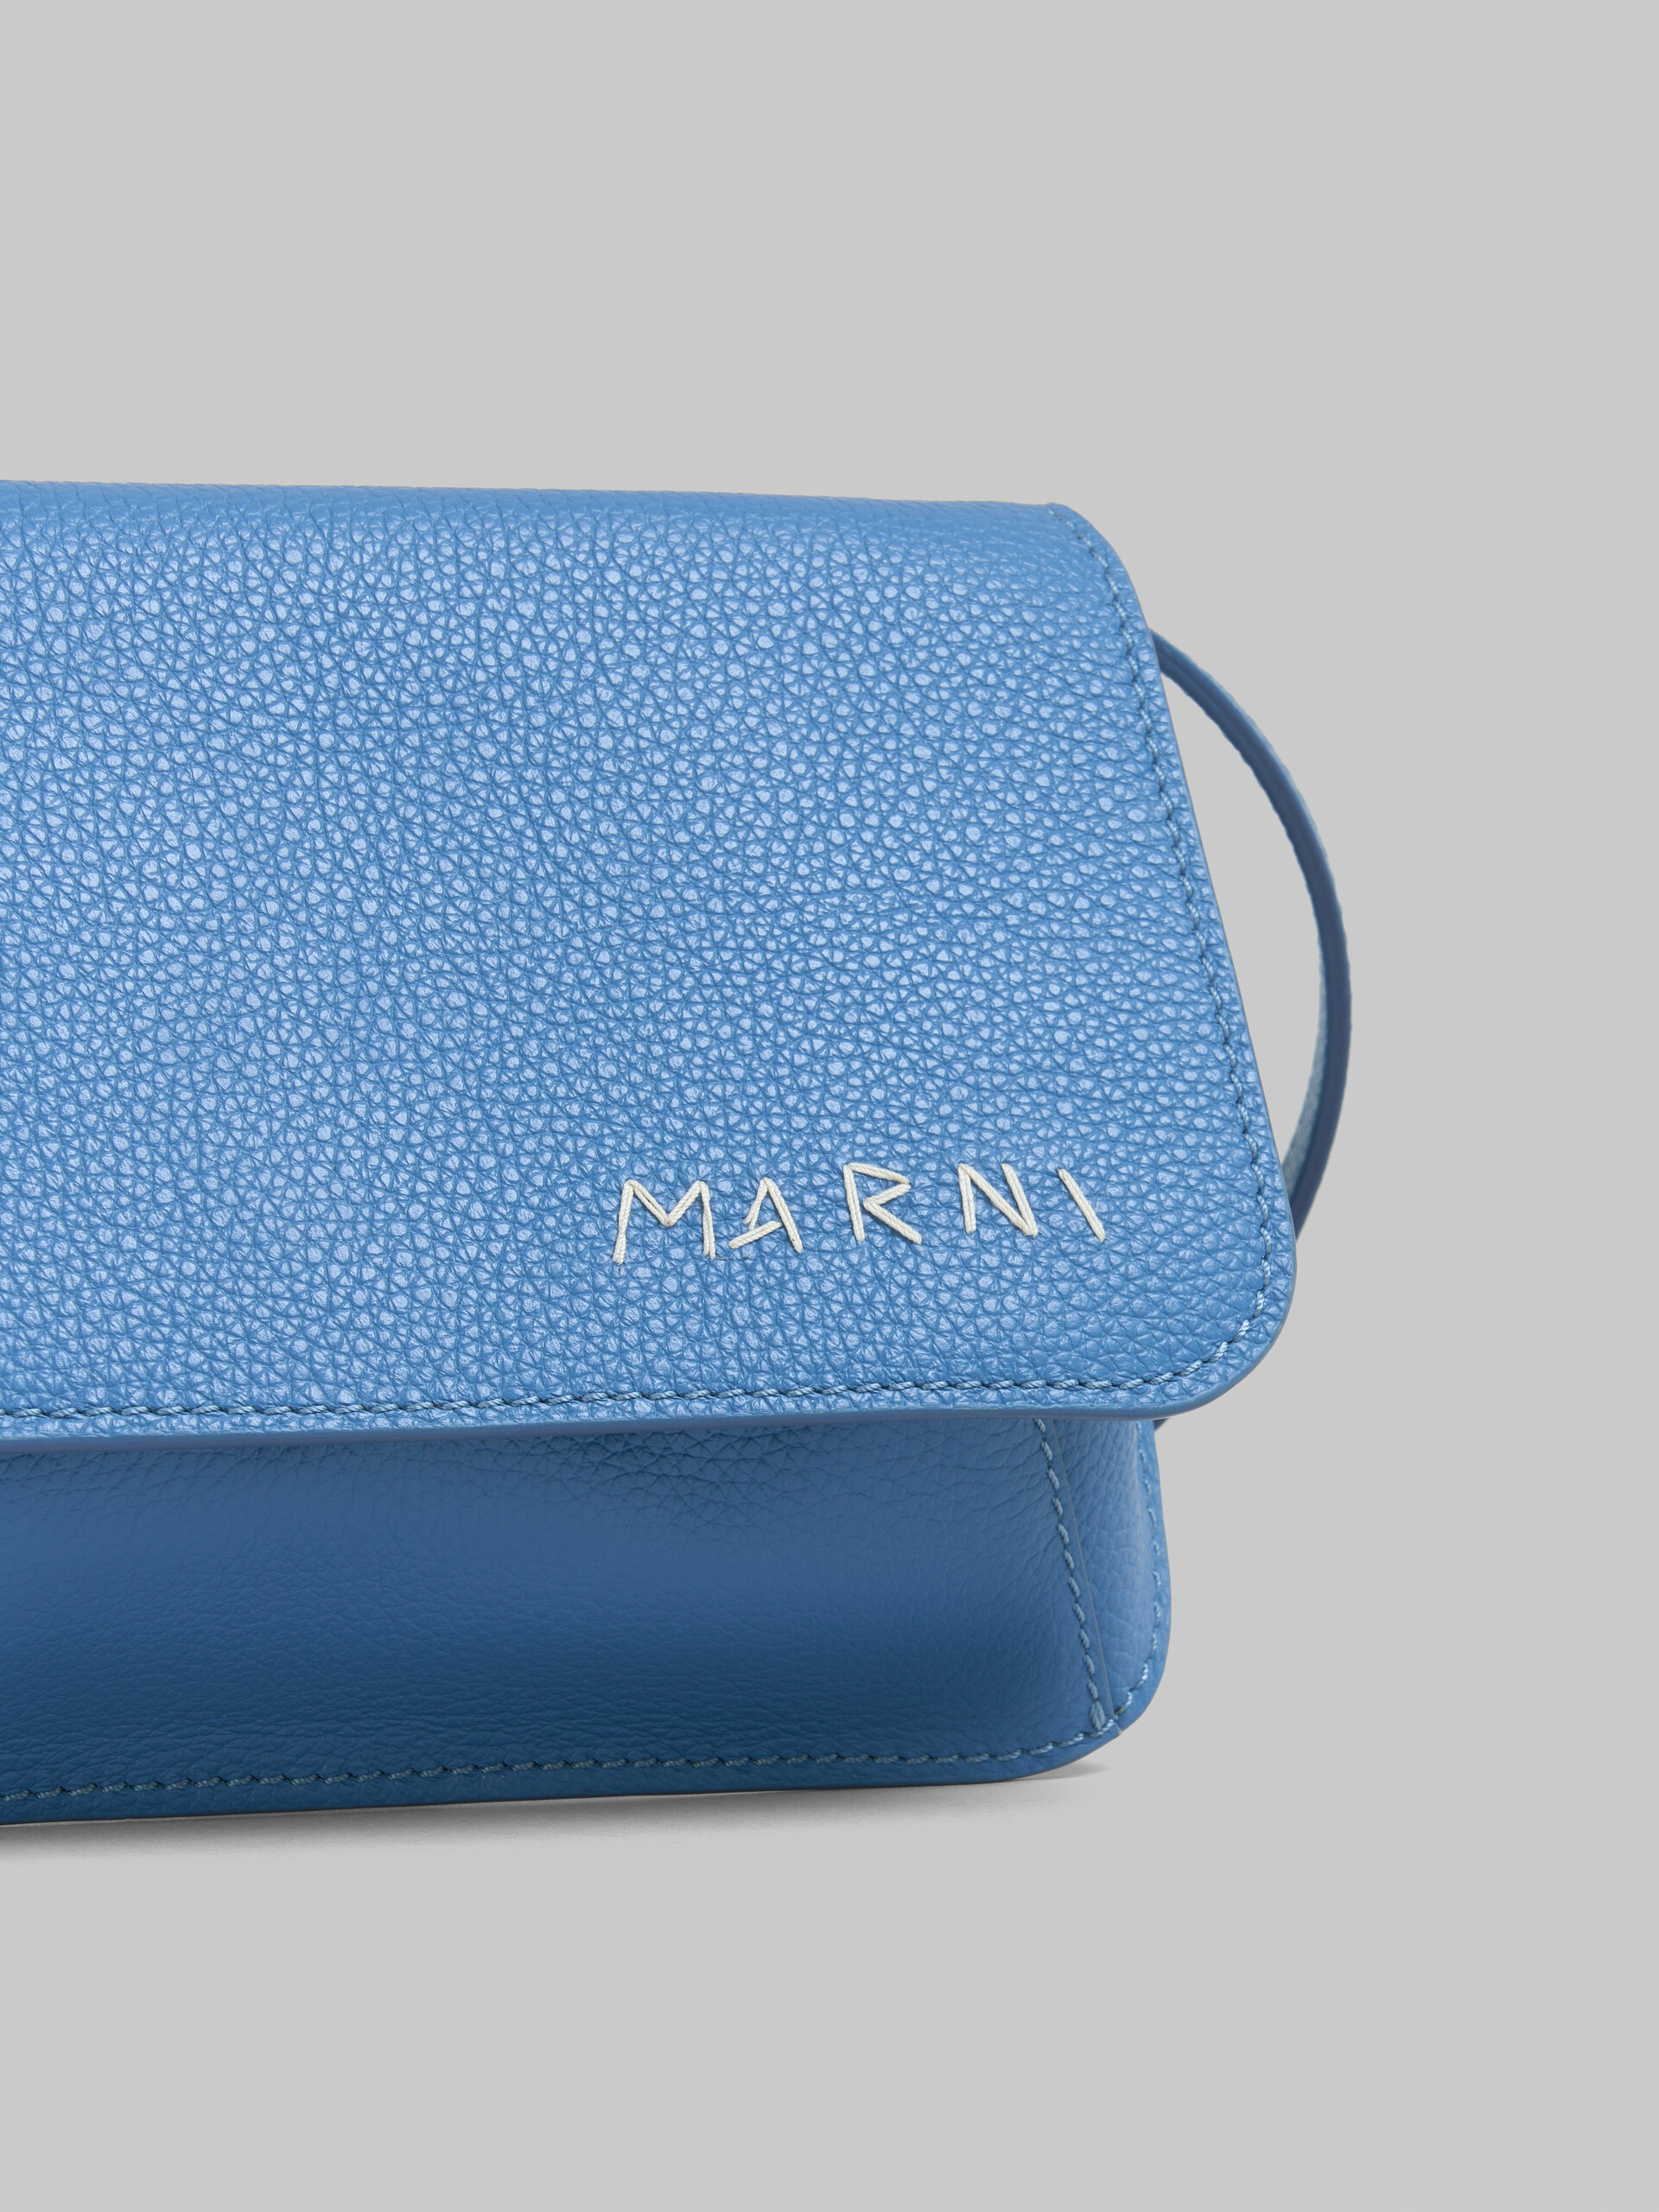 Blue leather shoulder bag with Marni mending | Marni